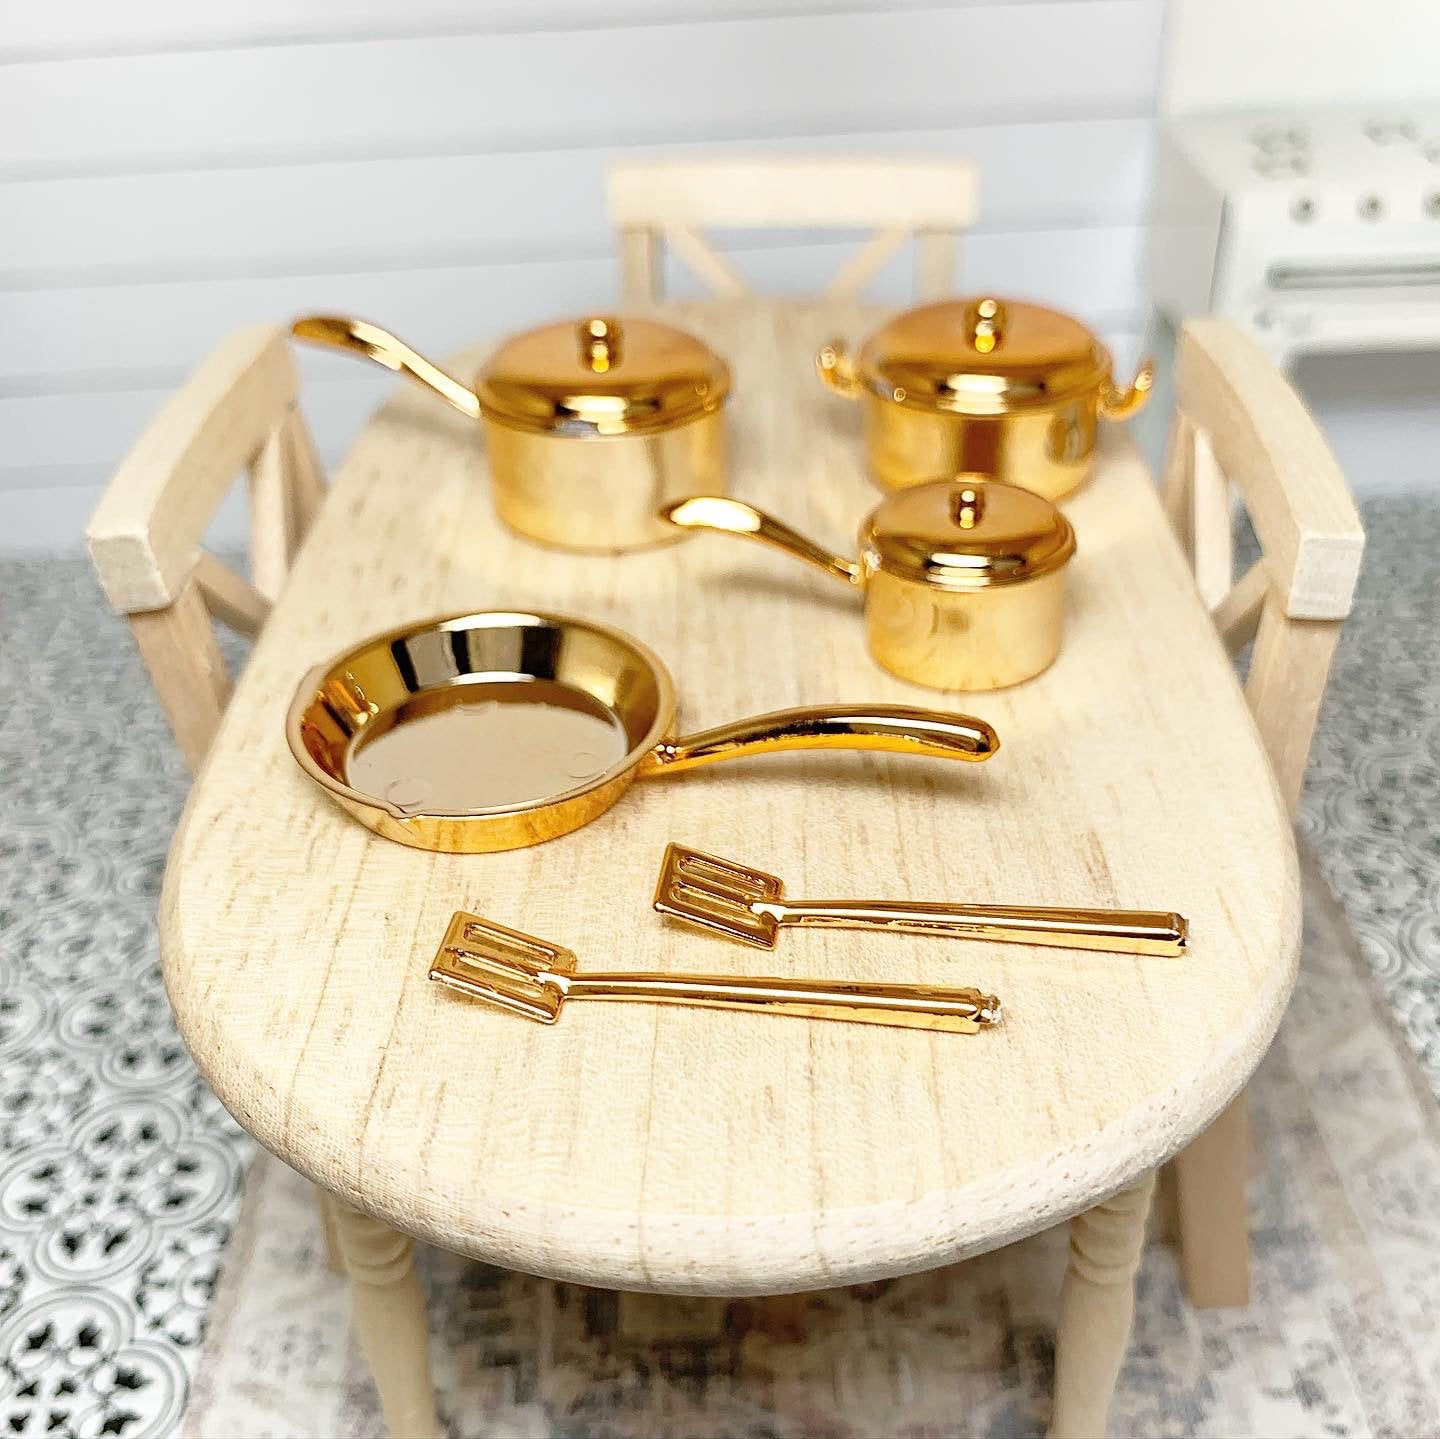 Gold Cookware Set